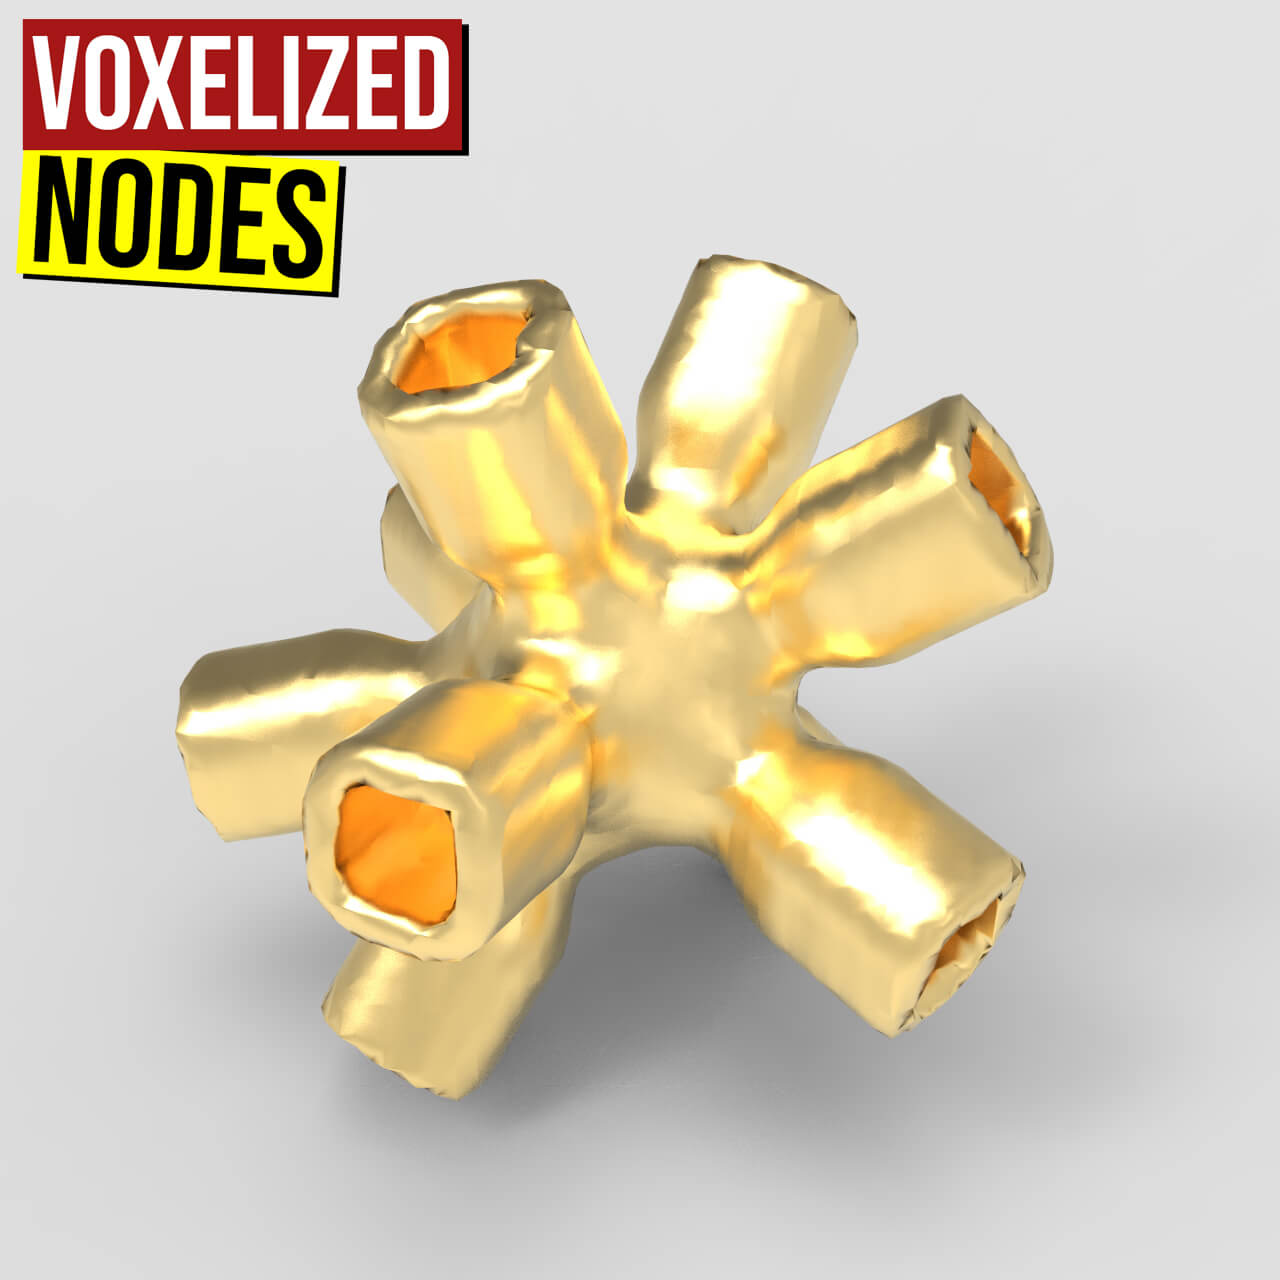 voxelizednodes1200